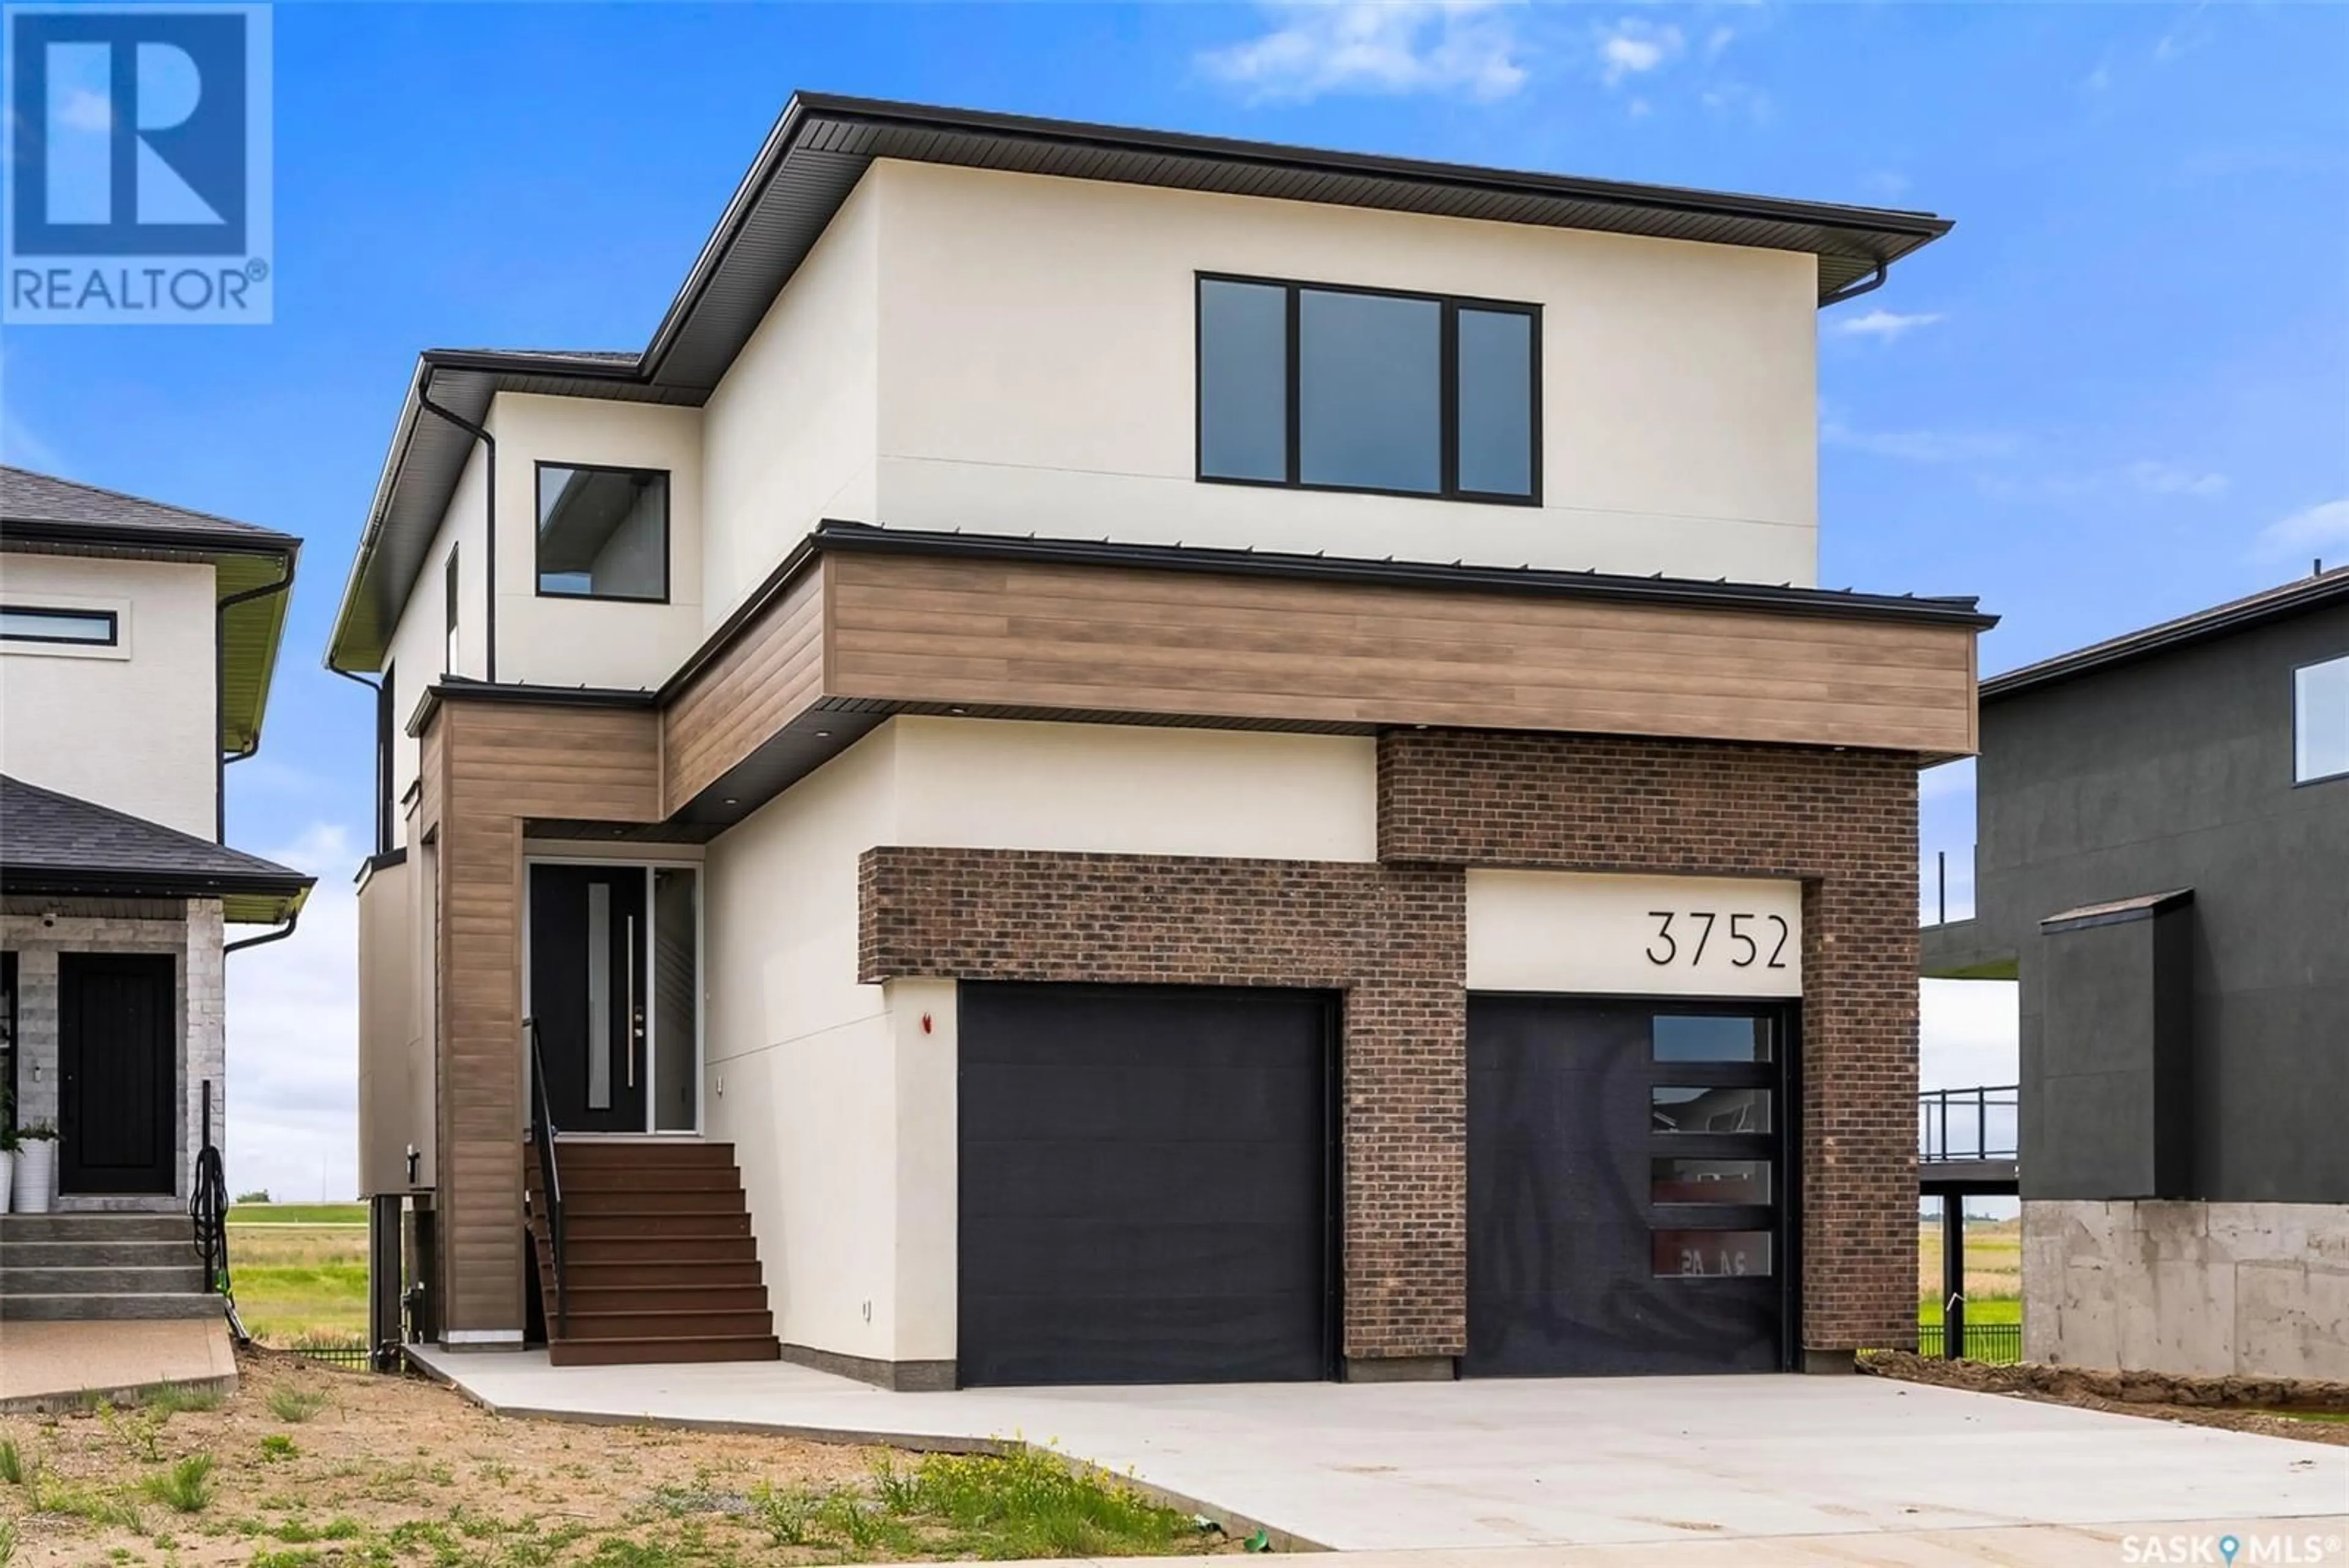 Home with brick exterior material for 3752 Gee CRESCENT, Regina Saskatchewan S4V3P1